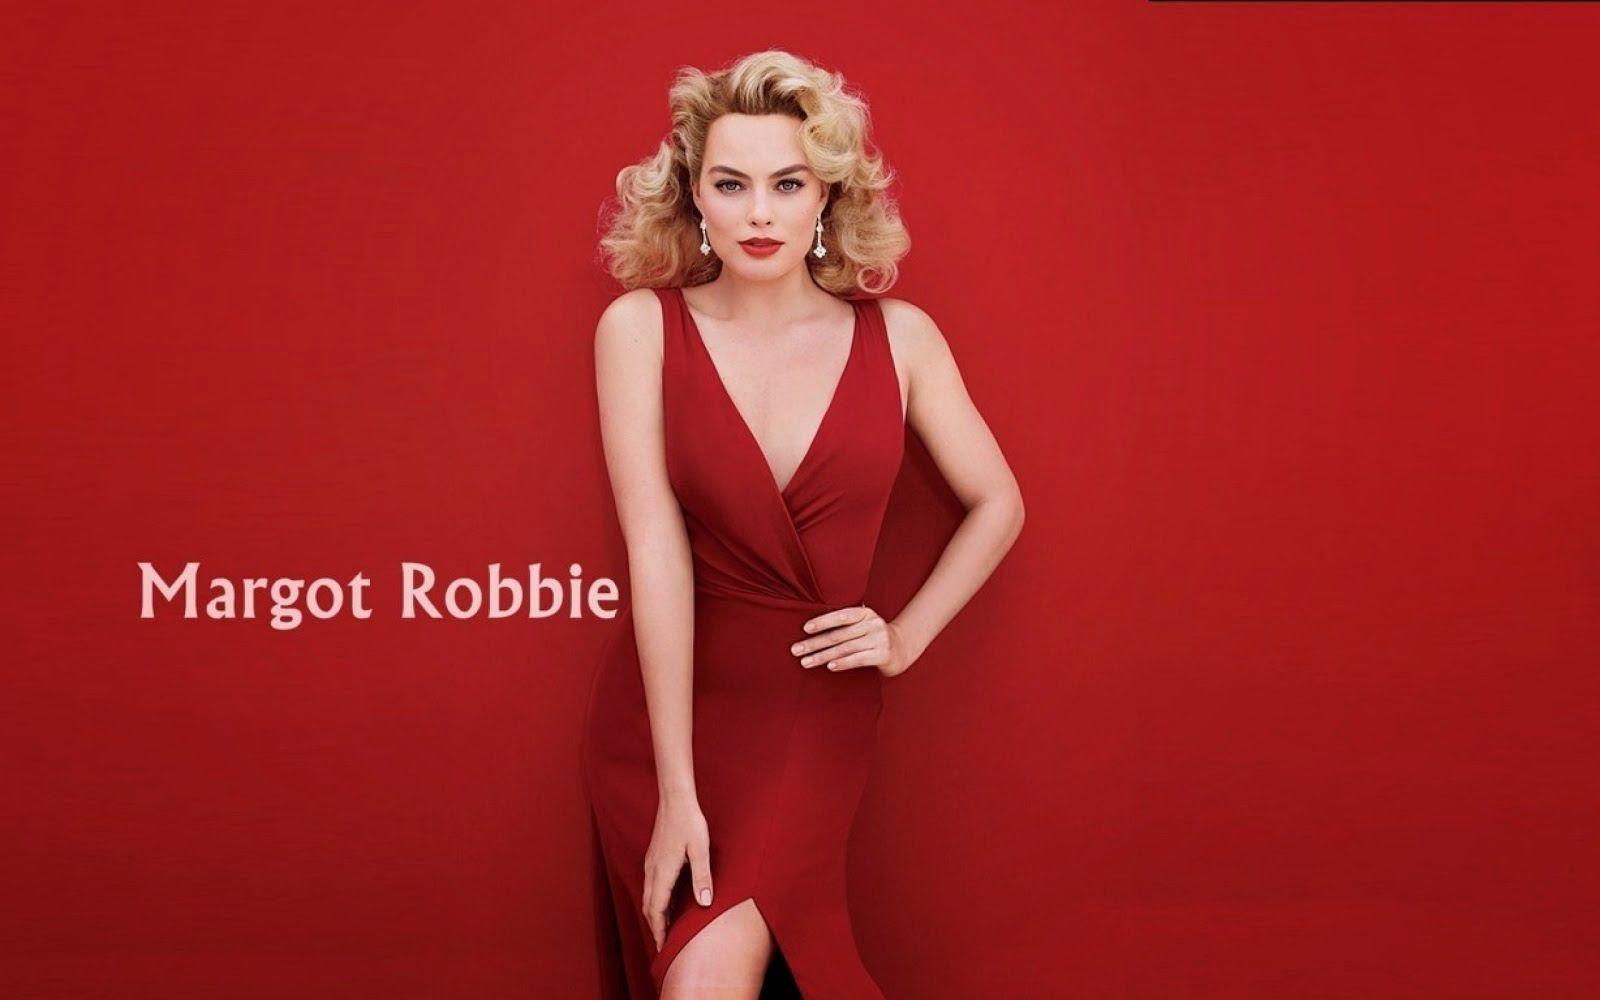 Margot Robbie Wallpaper. Download Free High Definition Desktop